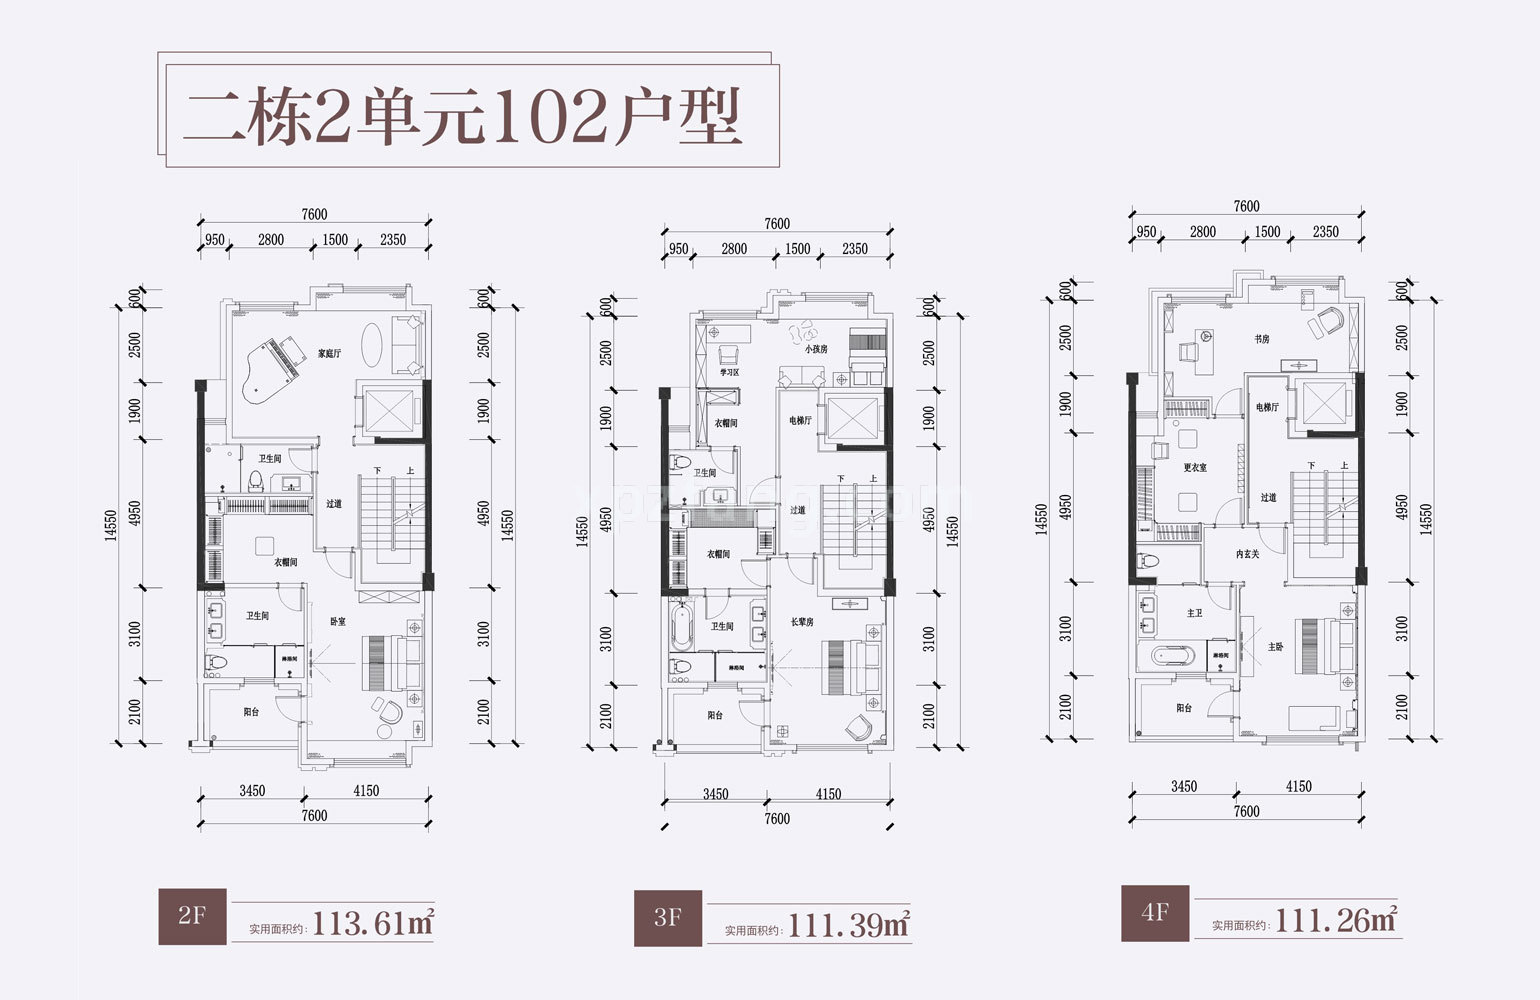 颐景山庄 别墅102户型2F、3F、4F 实用面积831.36㎡